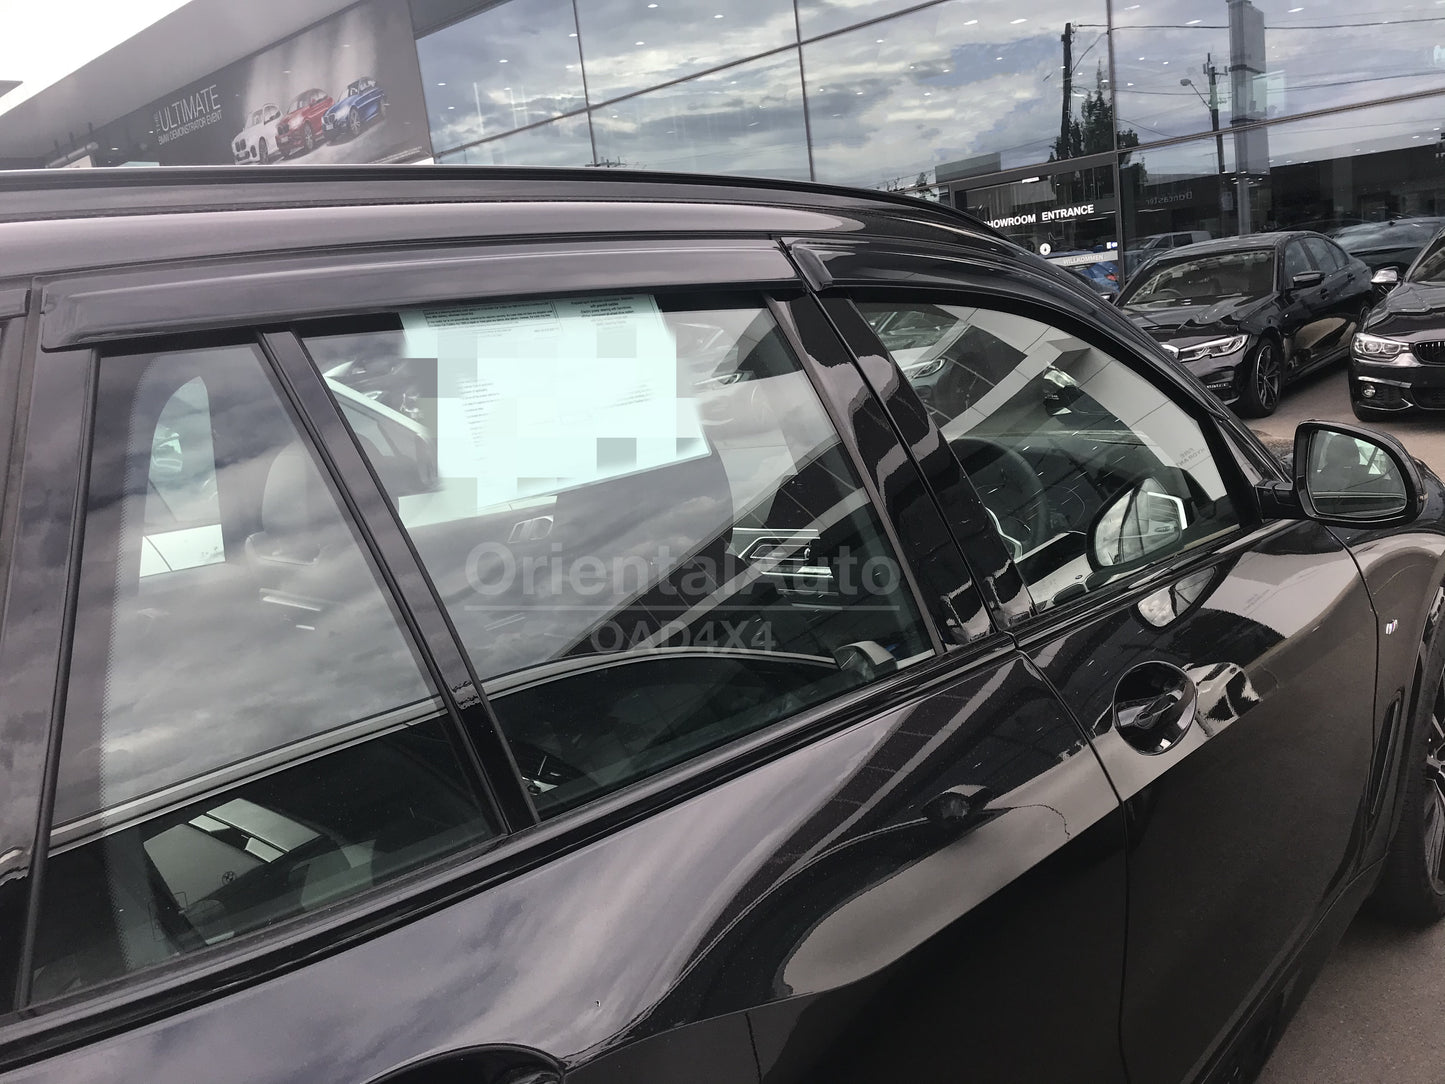 Luxury Weather Shields Weathershields Window Visor For BMW X5 M F95 2020+